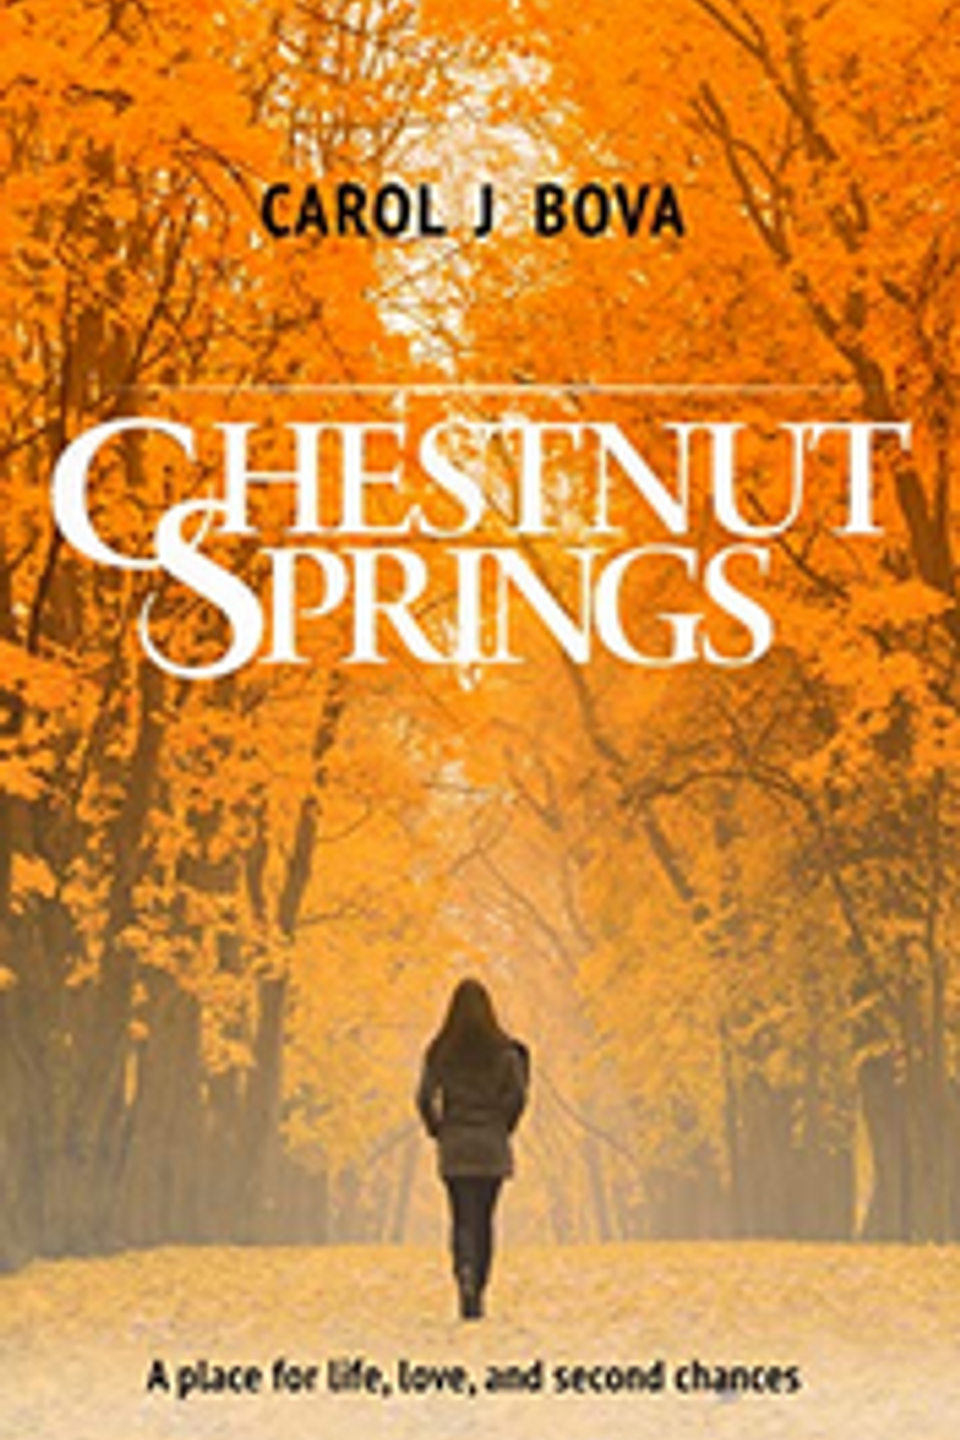 Chestnut springs